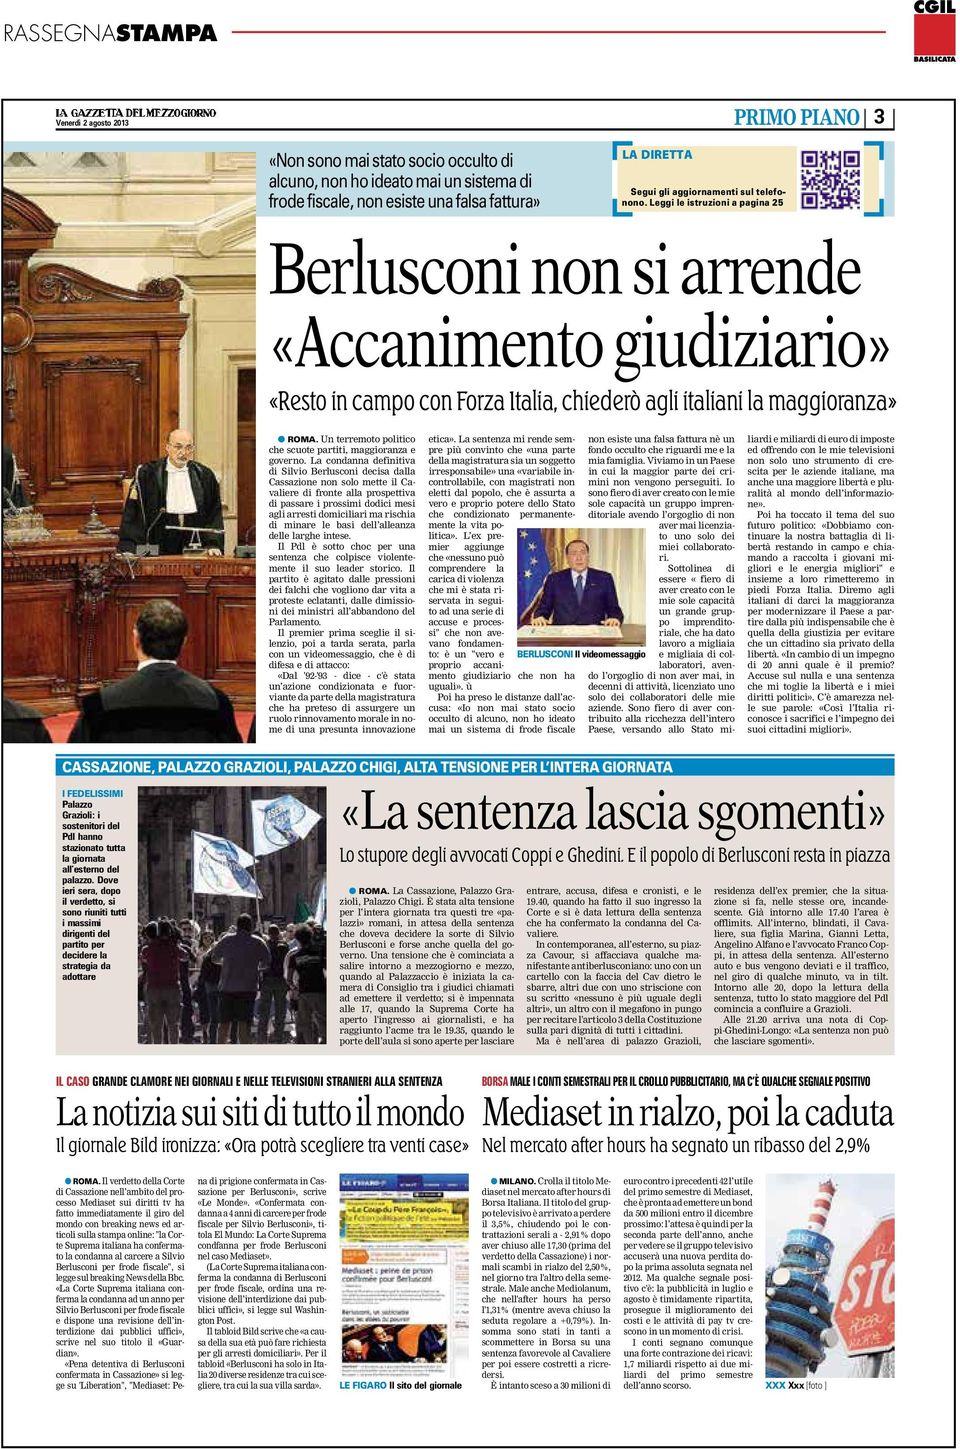 La condanna definitiva di Silvio Berlusconi decisa dalla Cassazione non solo mette il Cavaliere di fronte alla prospettiva di passare i prossimi dodici mesi agli arresti domiciliari ma rischia di